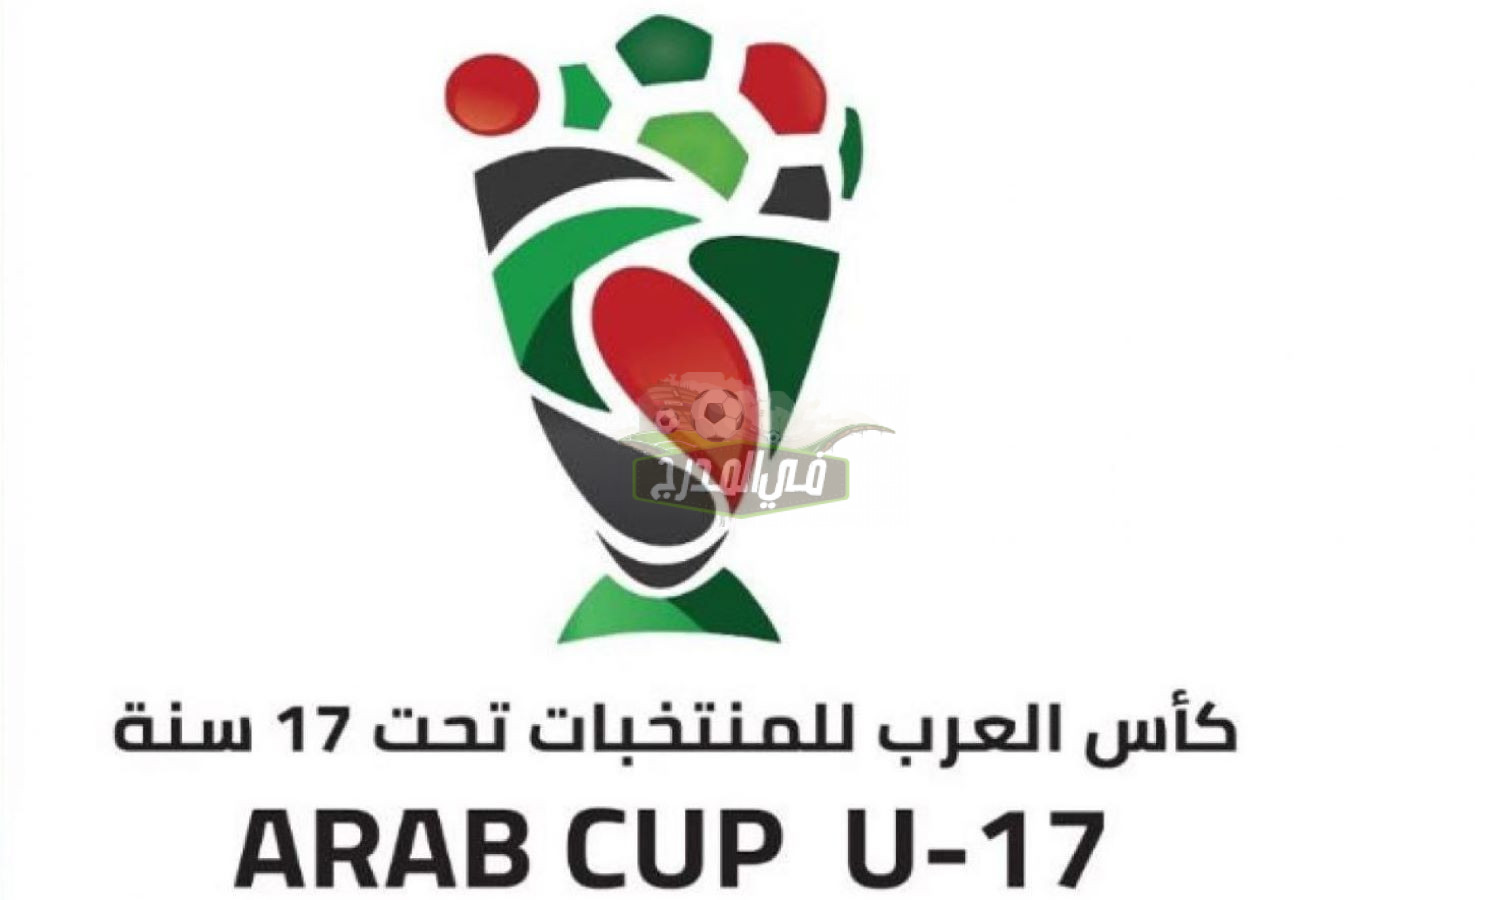 تردد القنوات الناقلة لمباراة الجزائر ضد المغرب في نهائي كأس العرب للناشئين